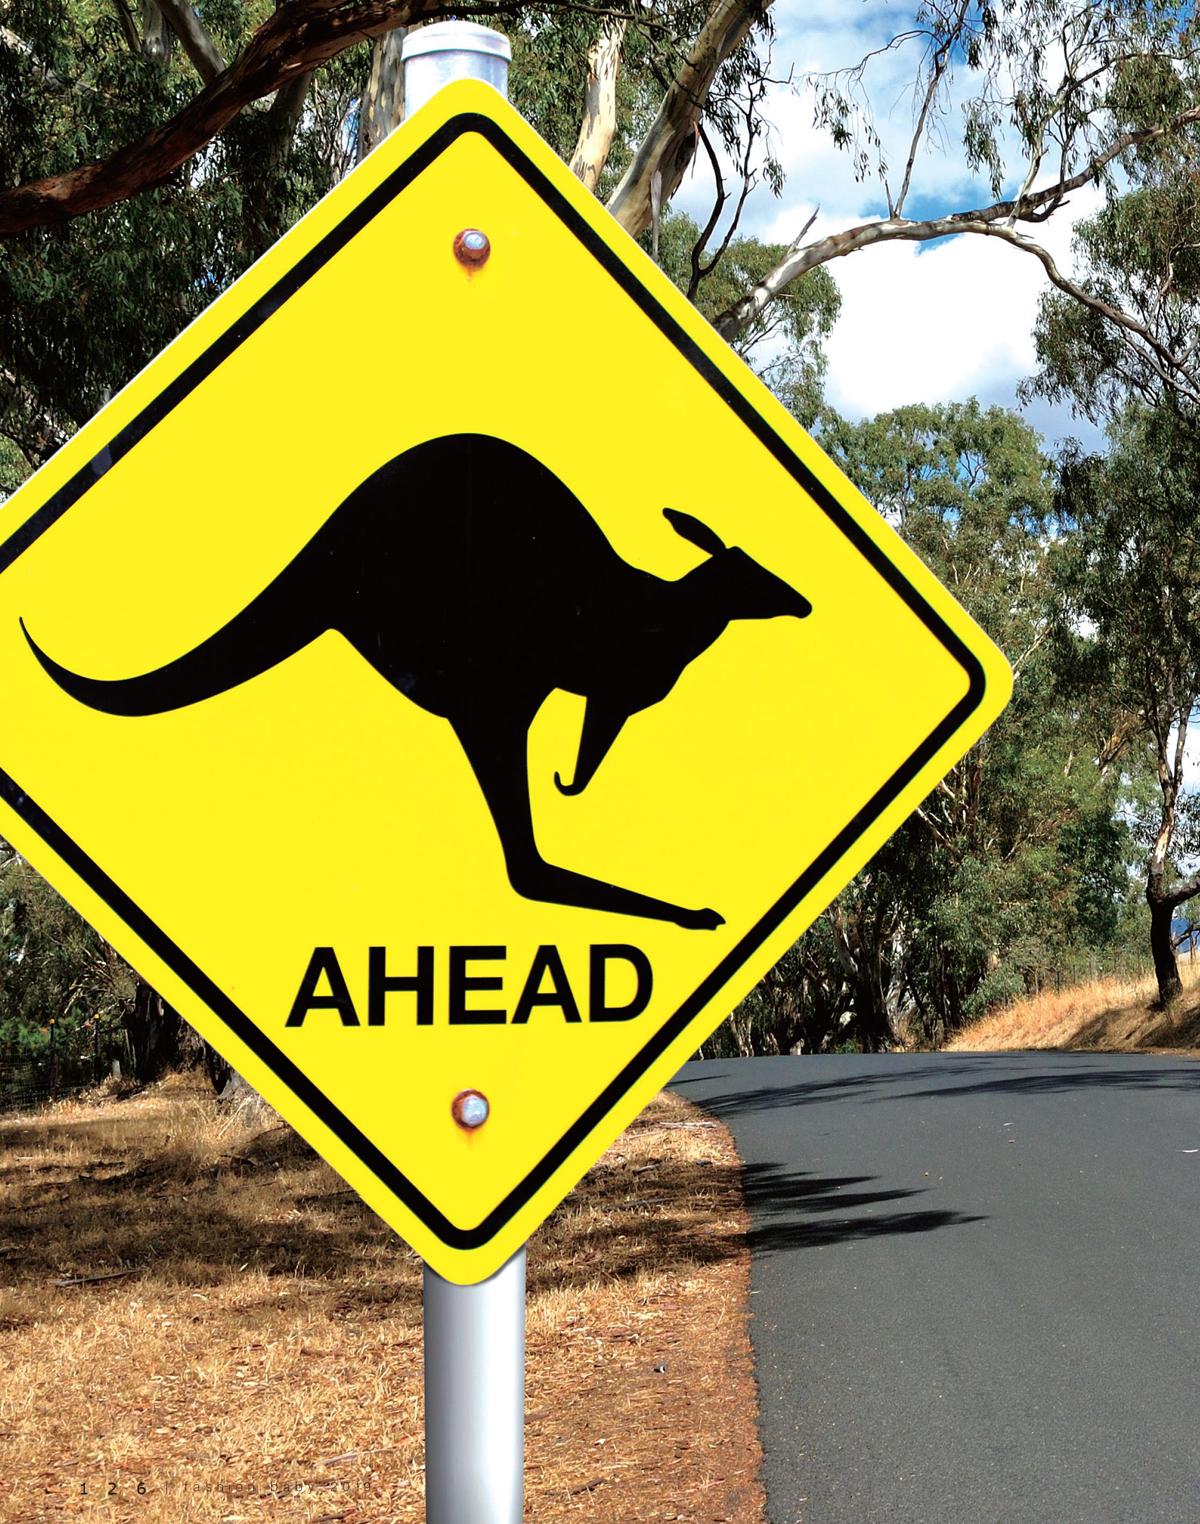 澳大利亚三角袋鼠标志图片